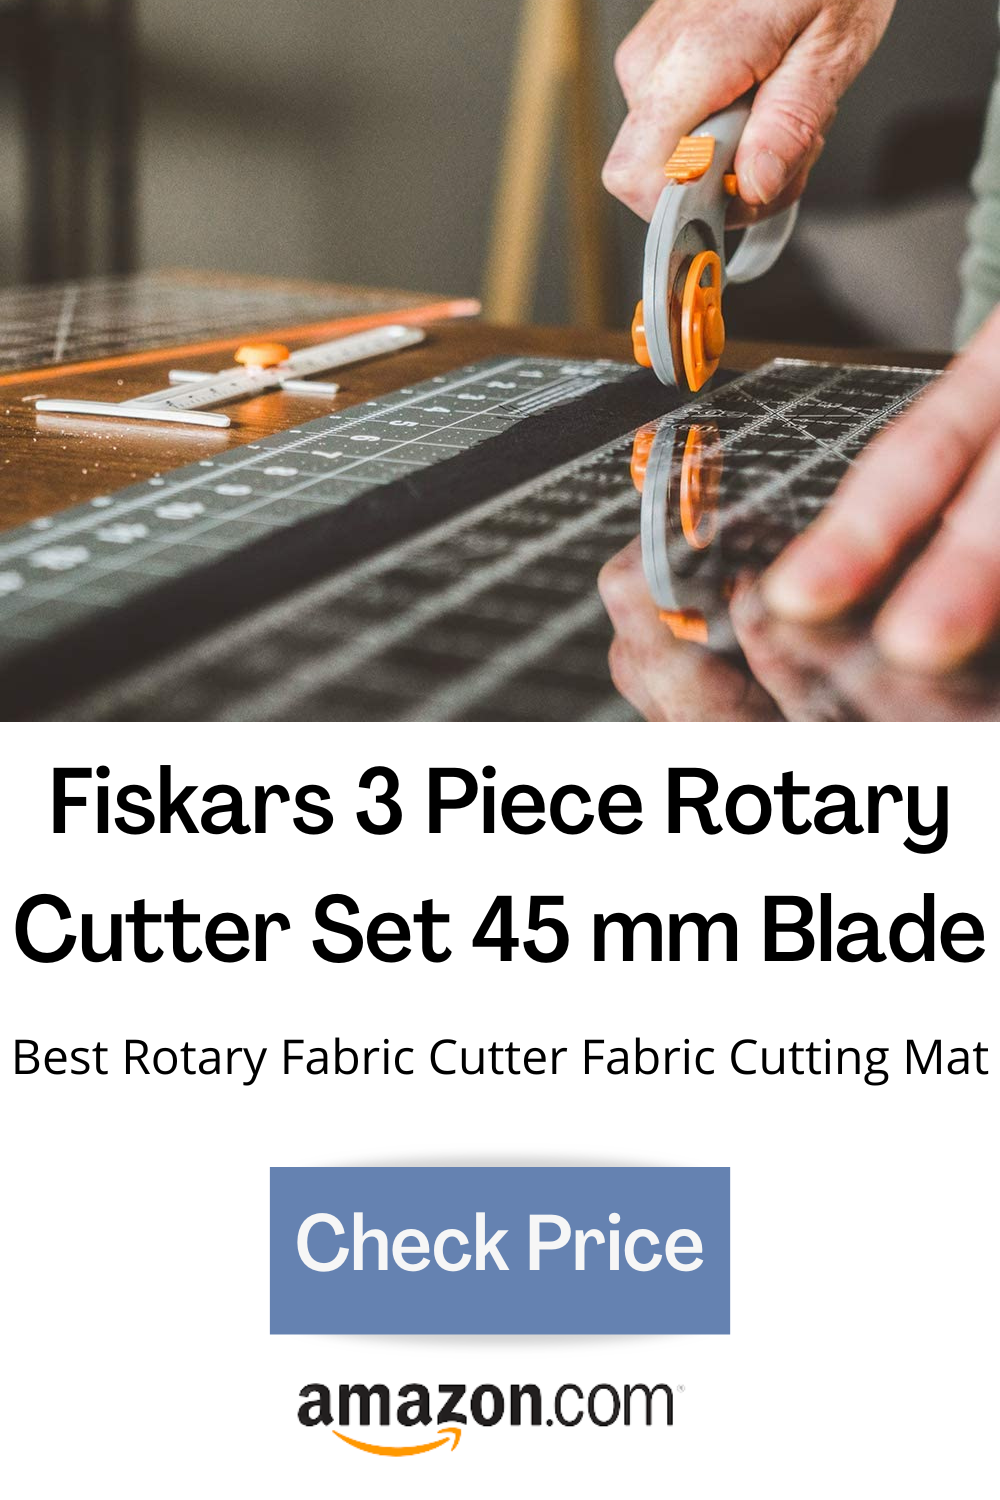 Fiskars Fabric Craft Sewing Fashion Starter Set 3pcs